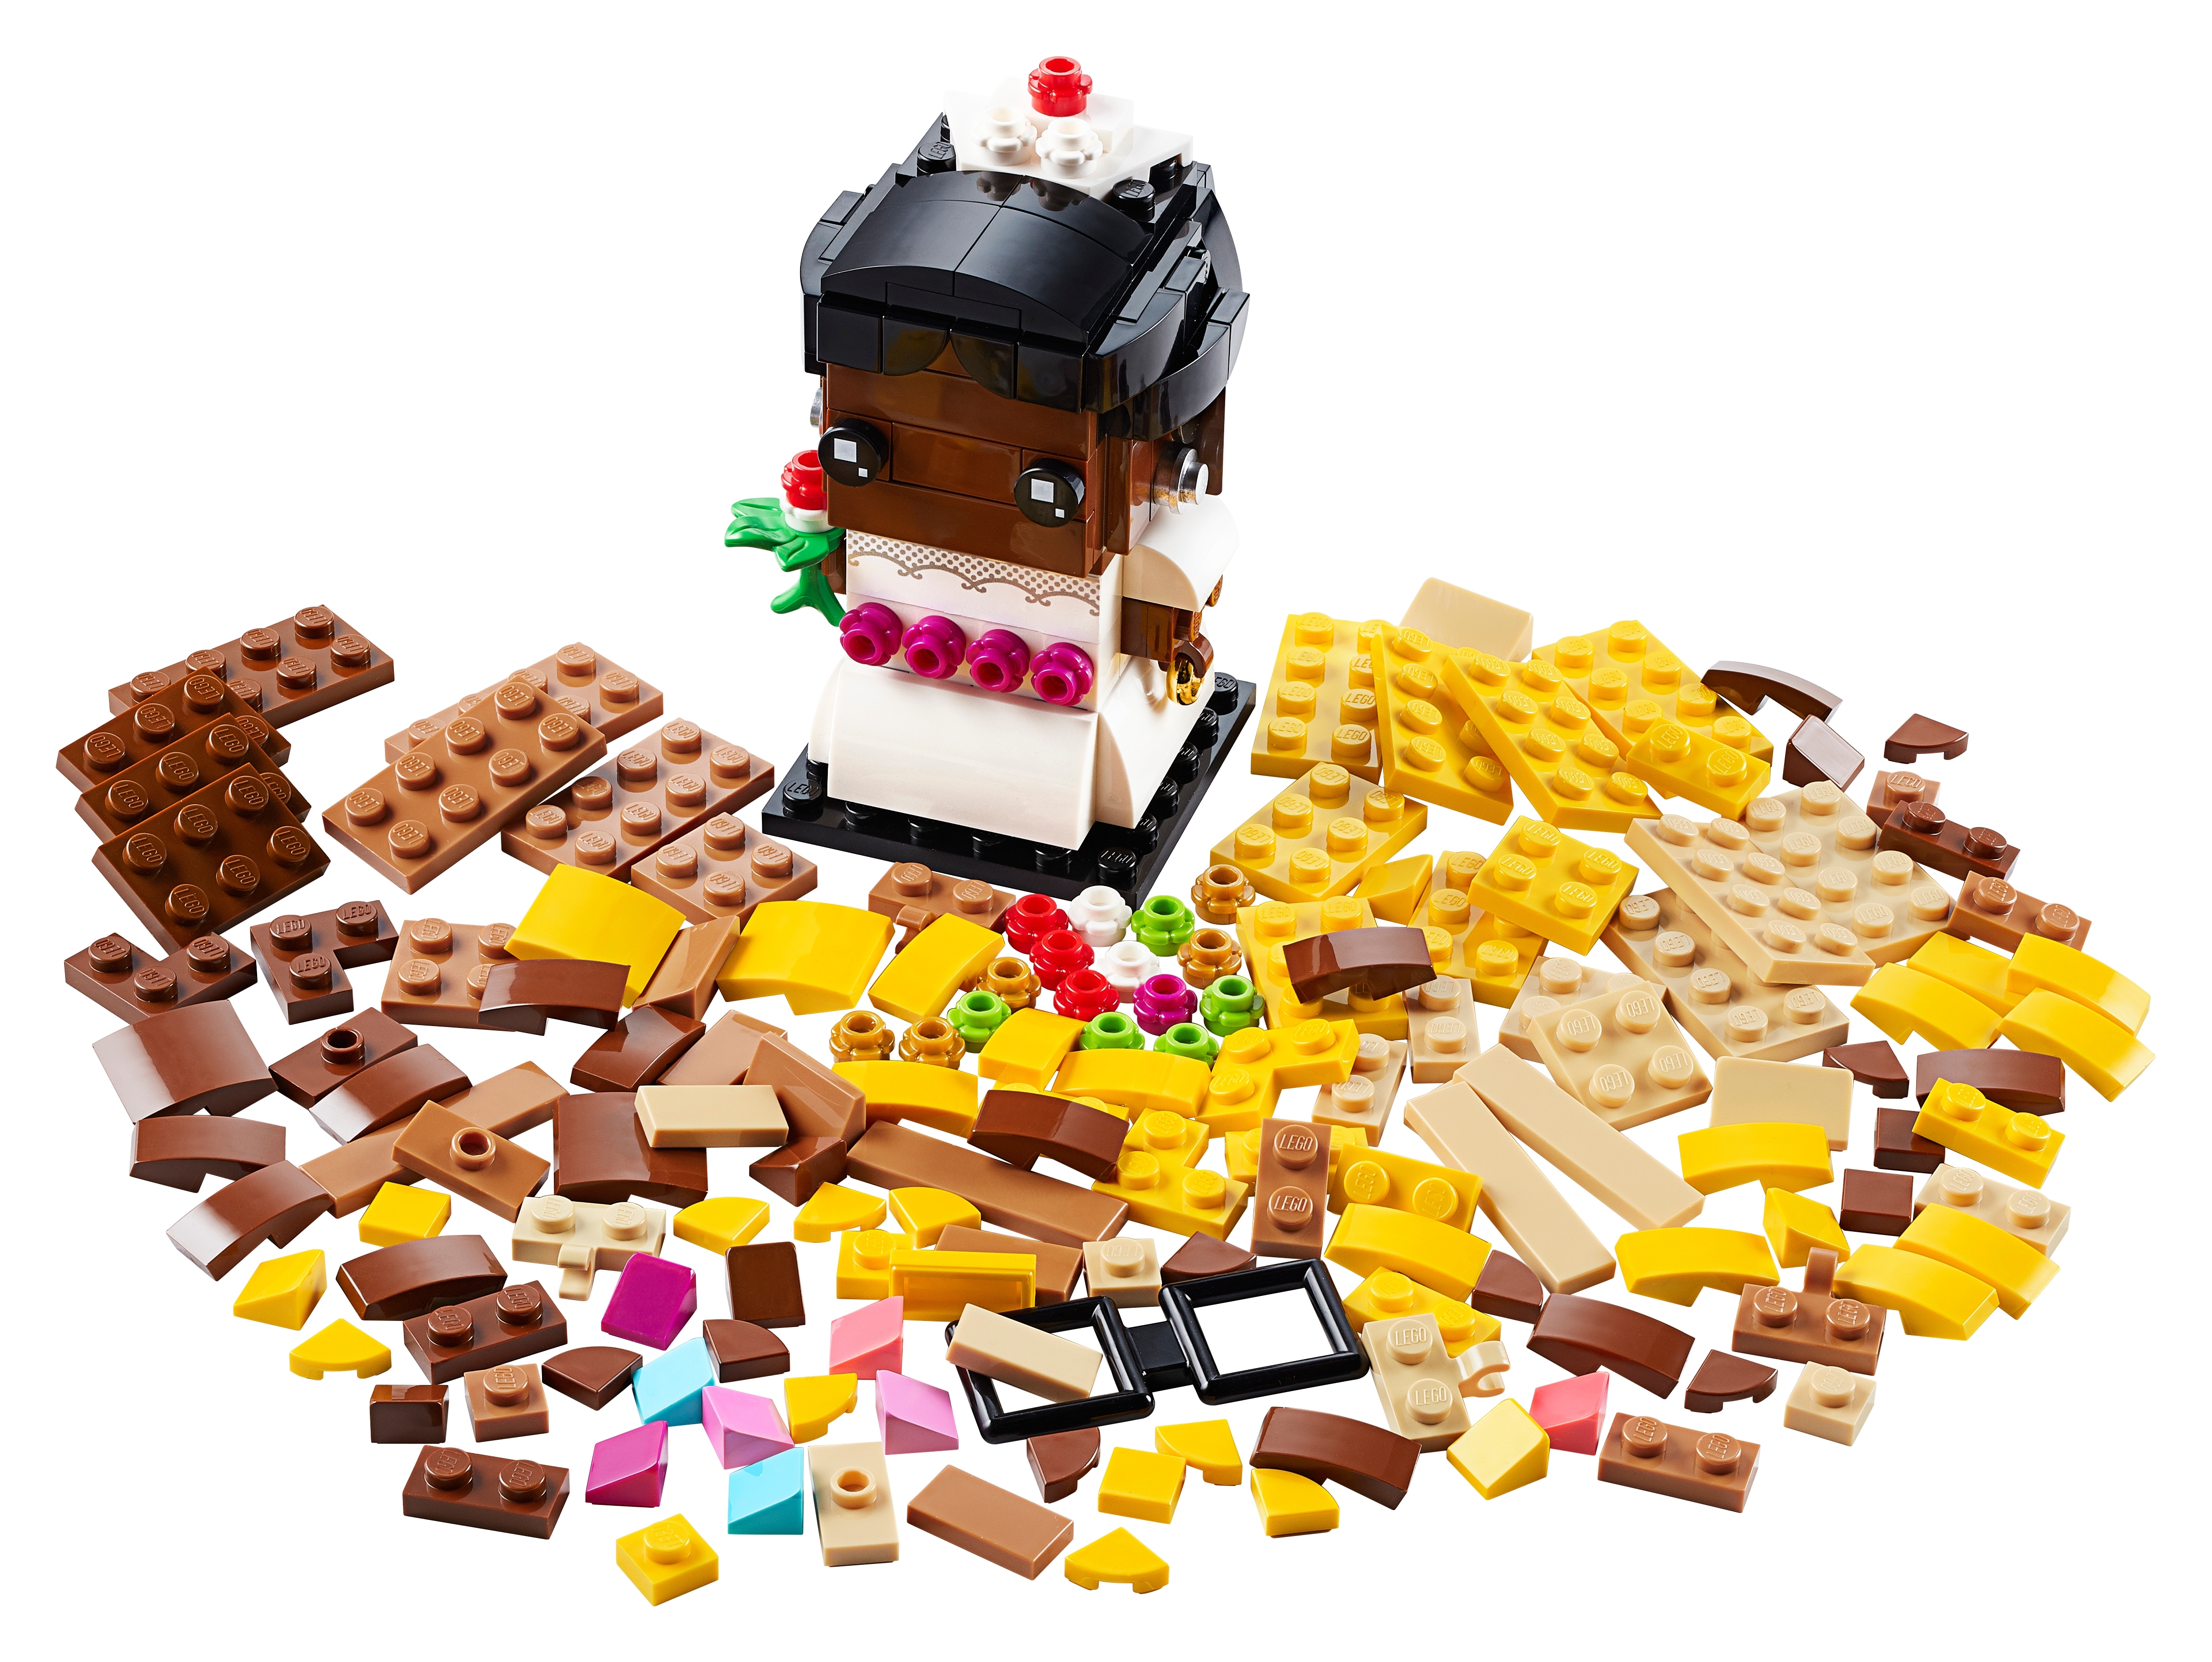 where to buy lego brickheadz